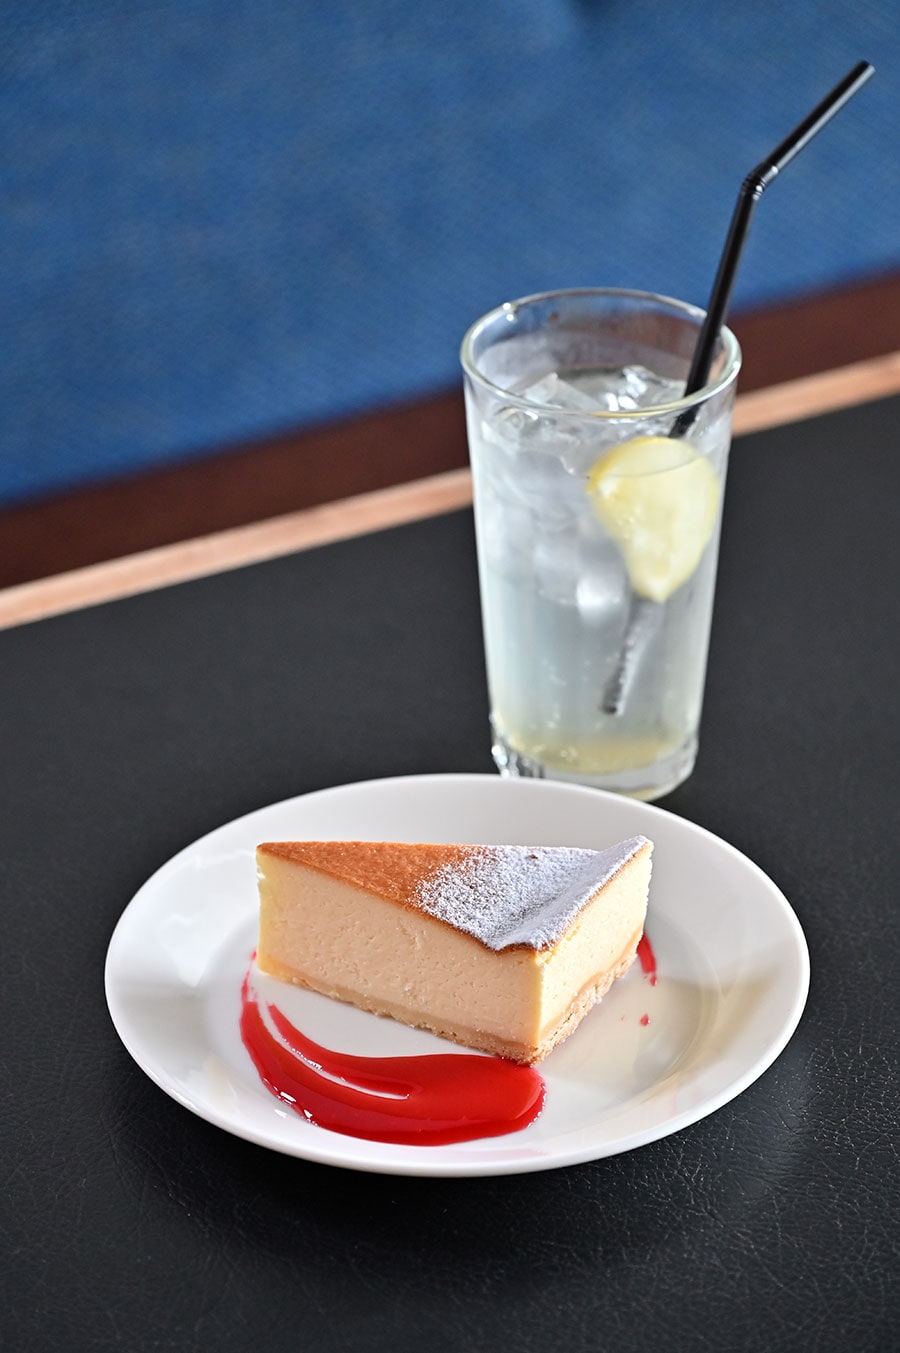 チーズケーキ600円とレモネード500円。